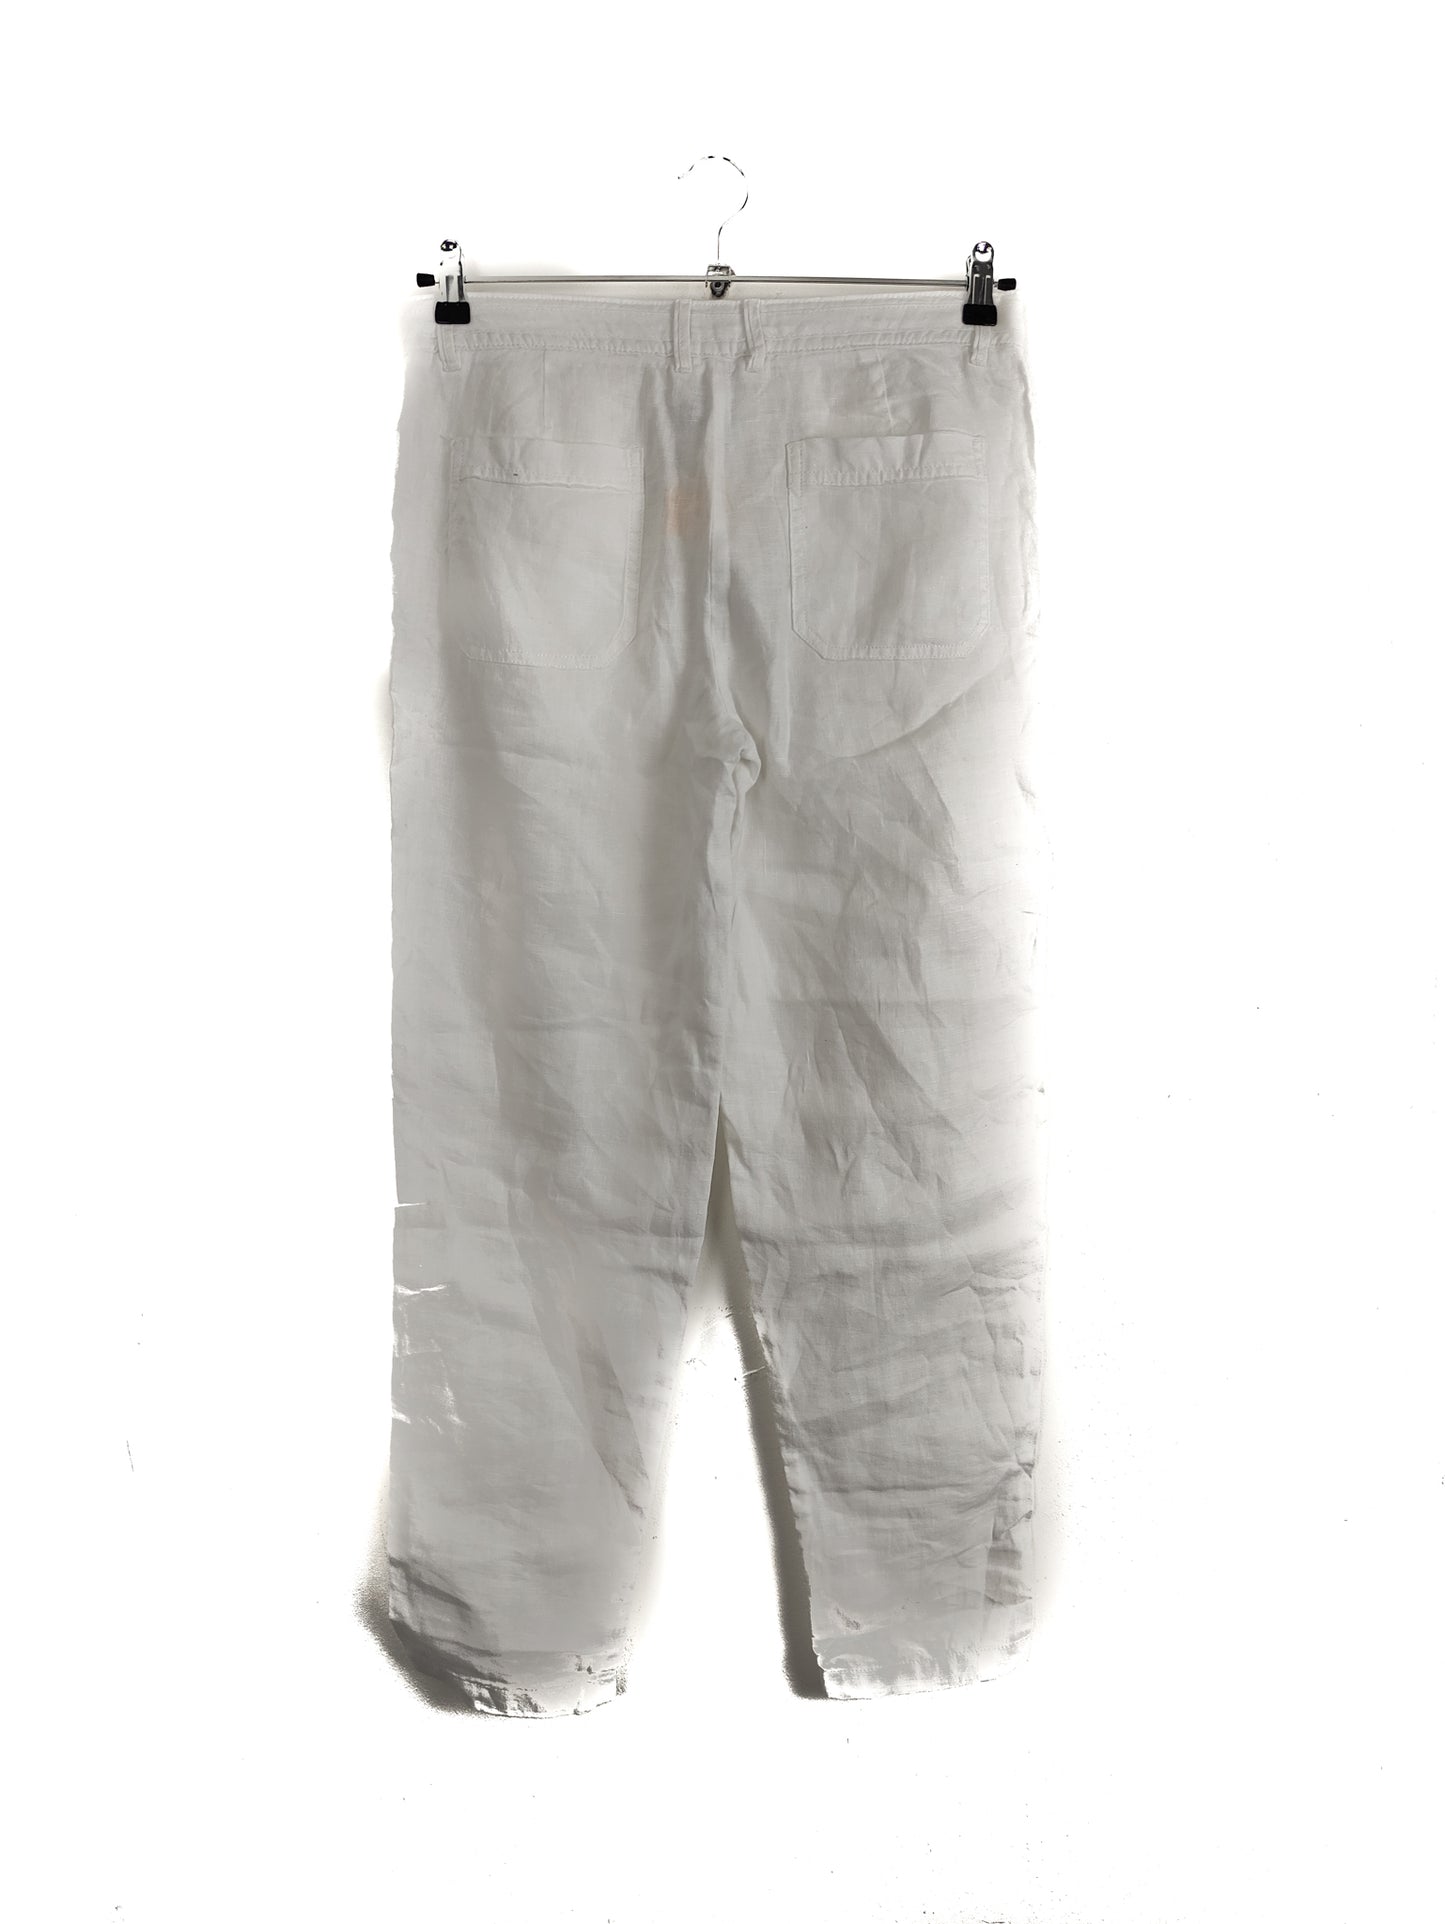 Γυναικεία Παντελόνα LINEN BY F&F σε Λευκό Χρώμα (Medium)